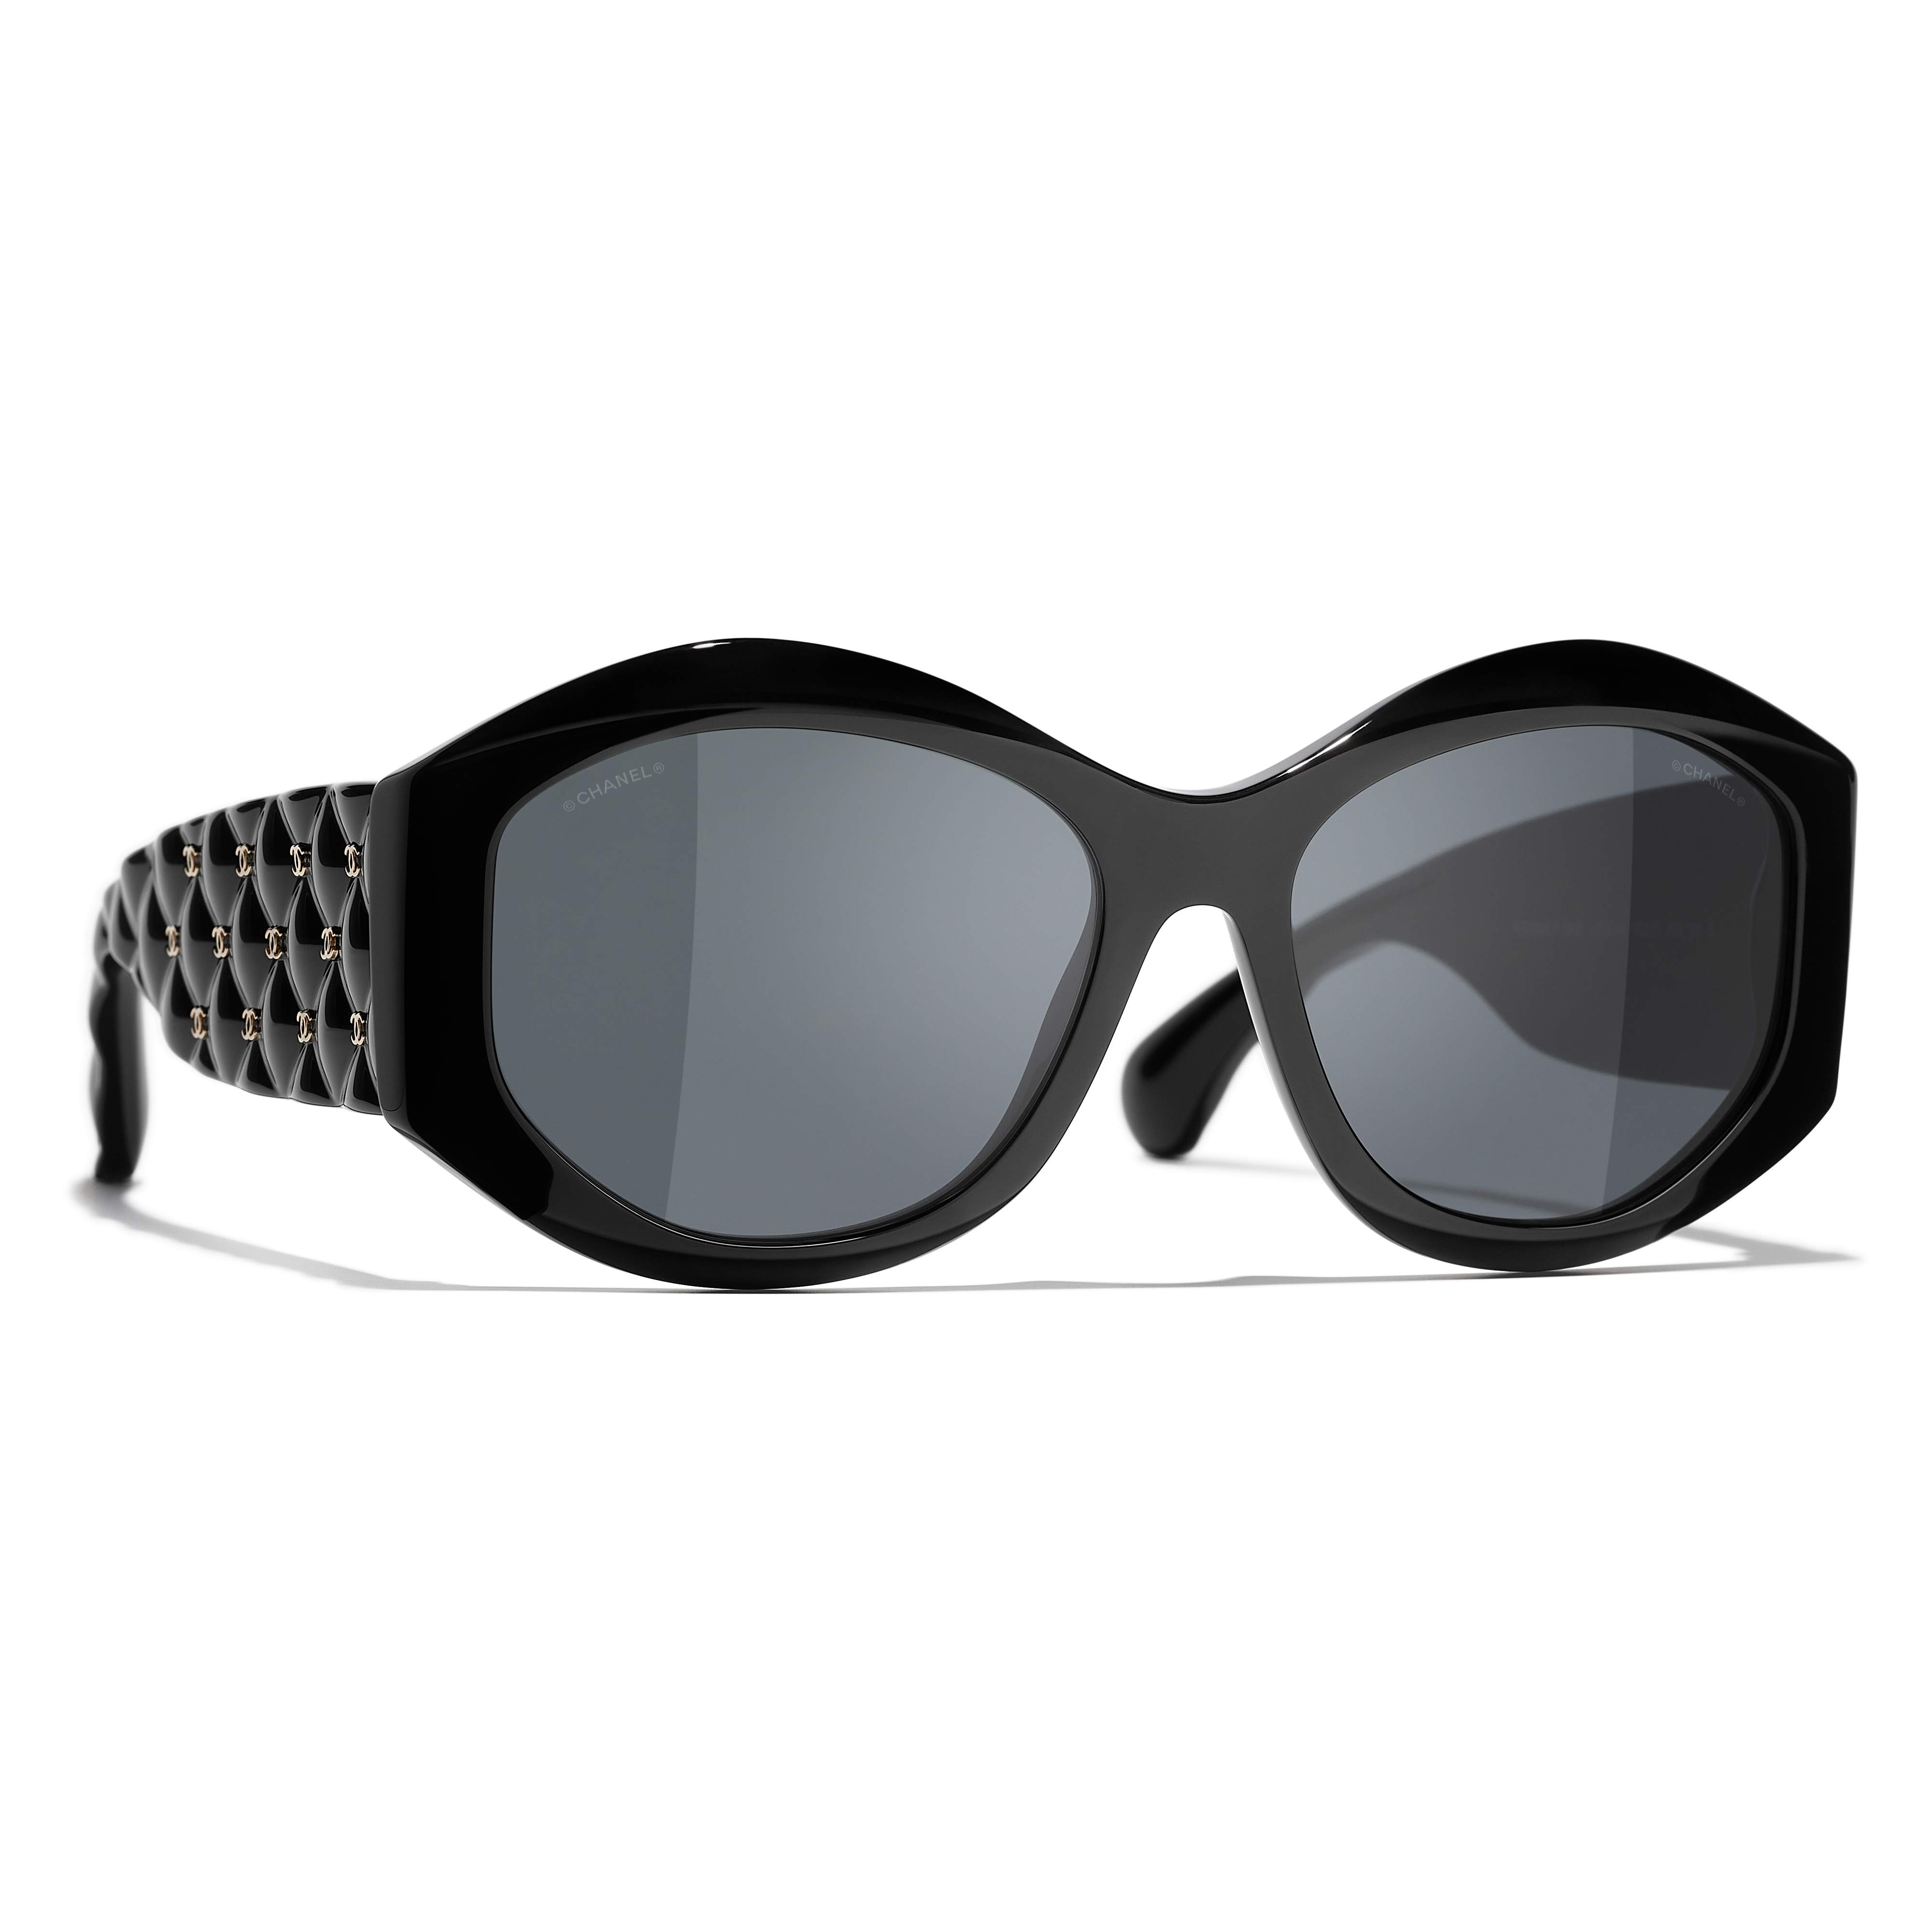 Sunglasses CHANEL CH5486 C622/S4 56-17 Black in stock, Price 291,67 €